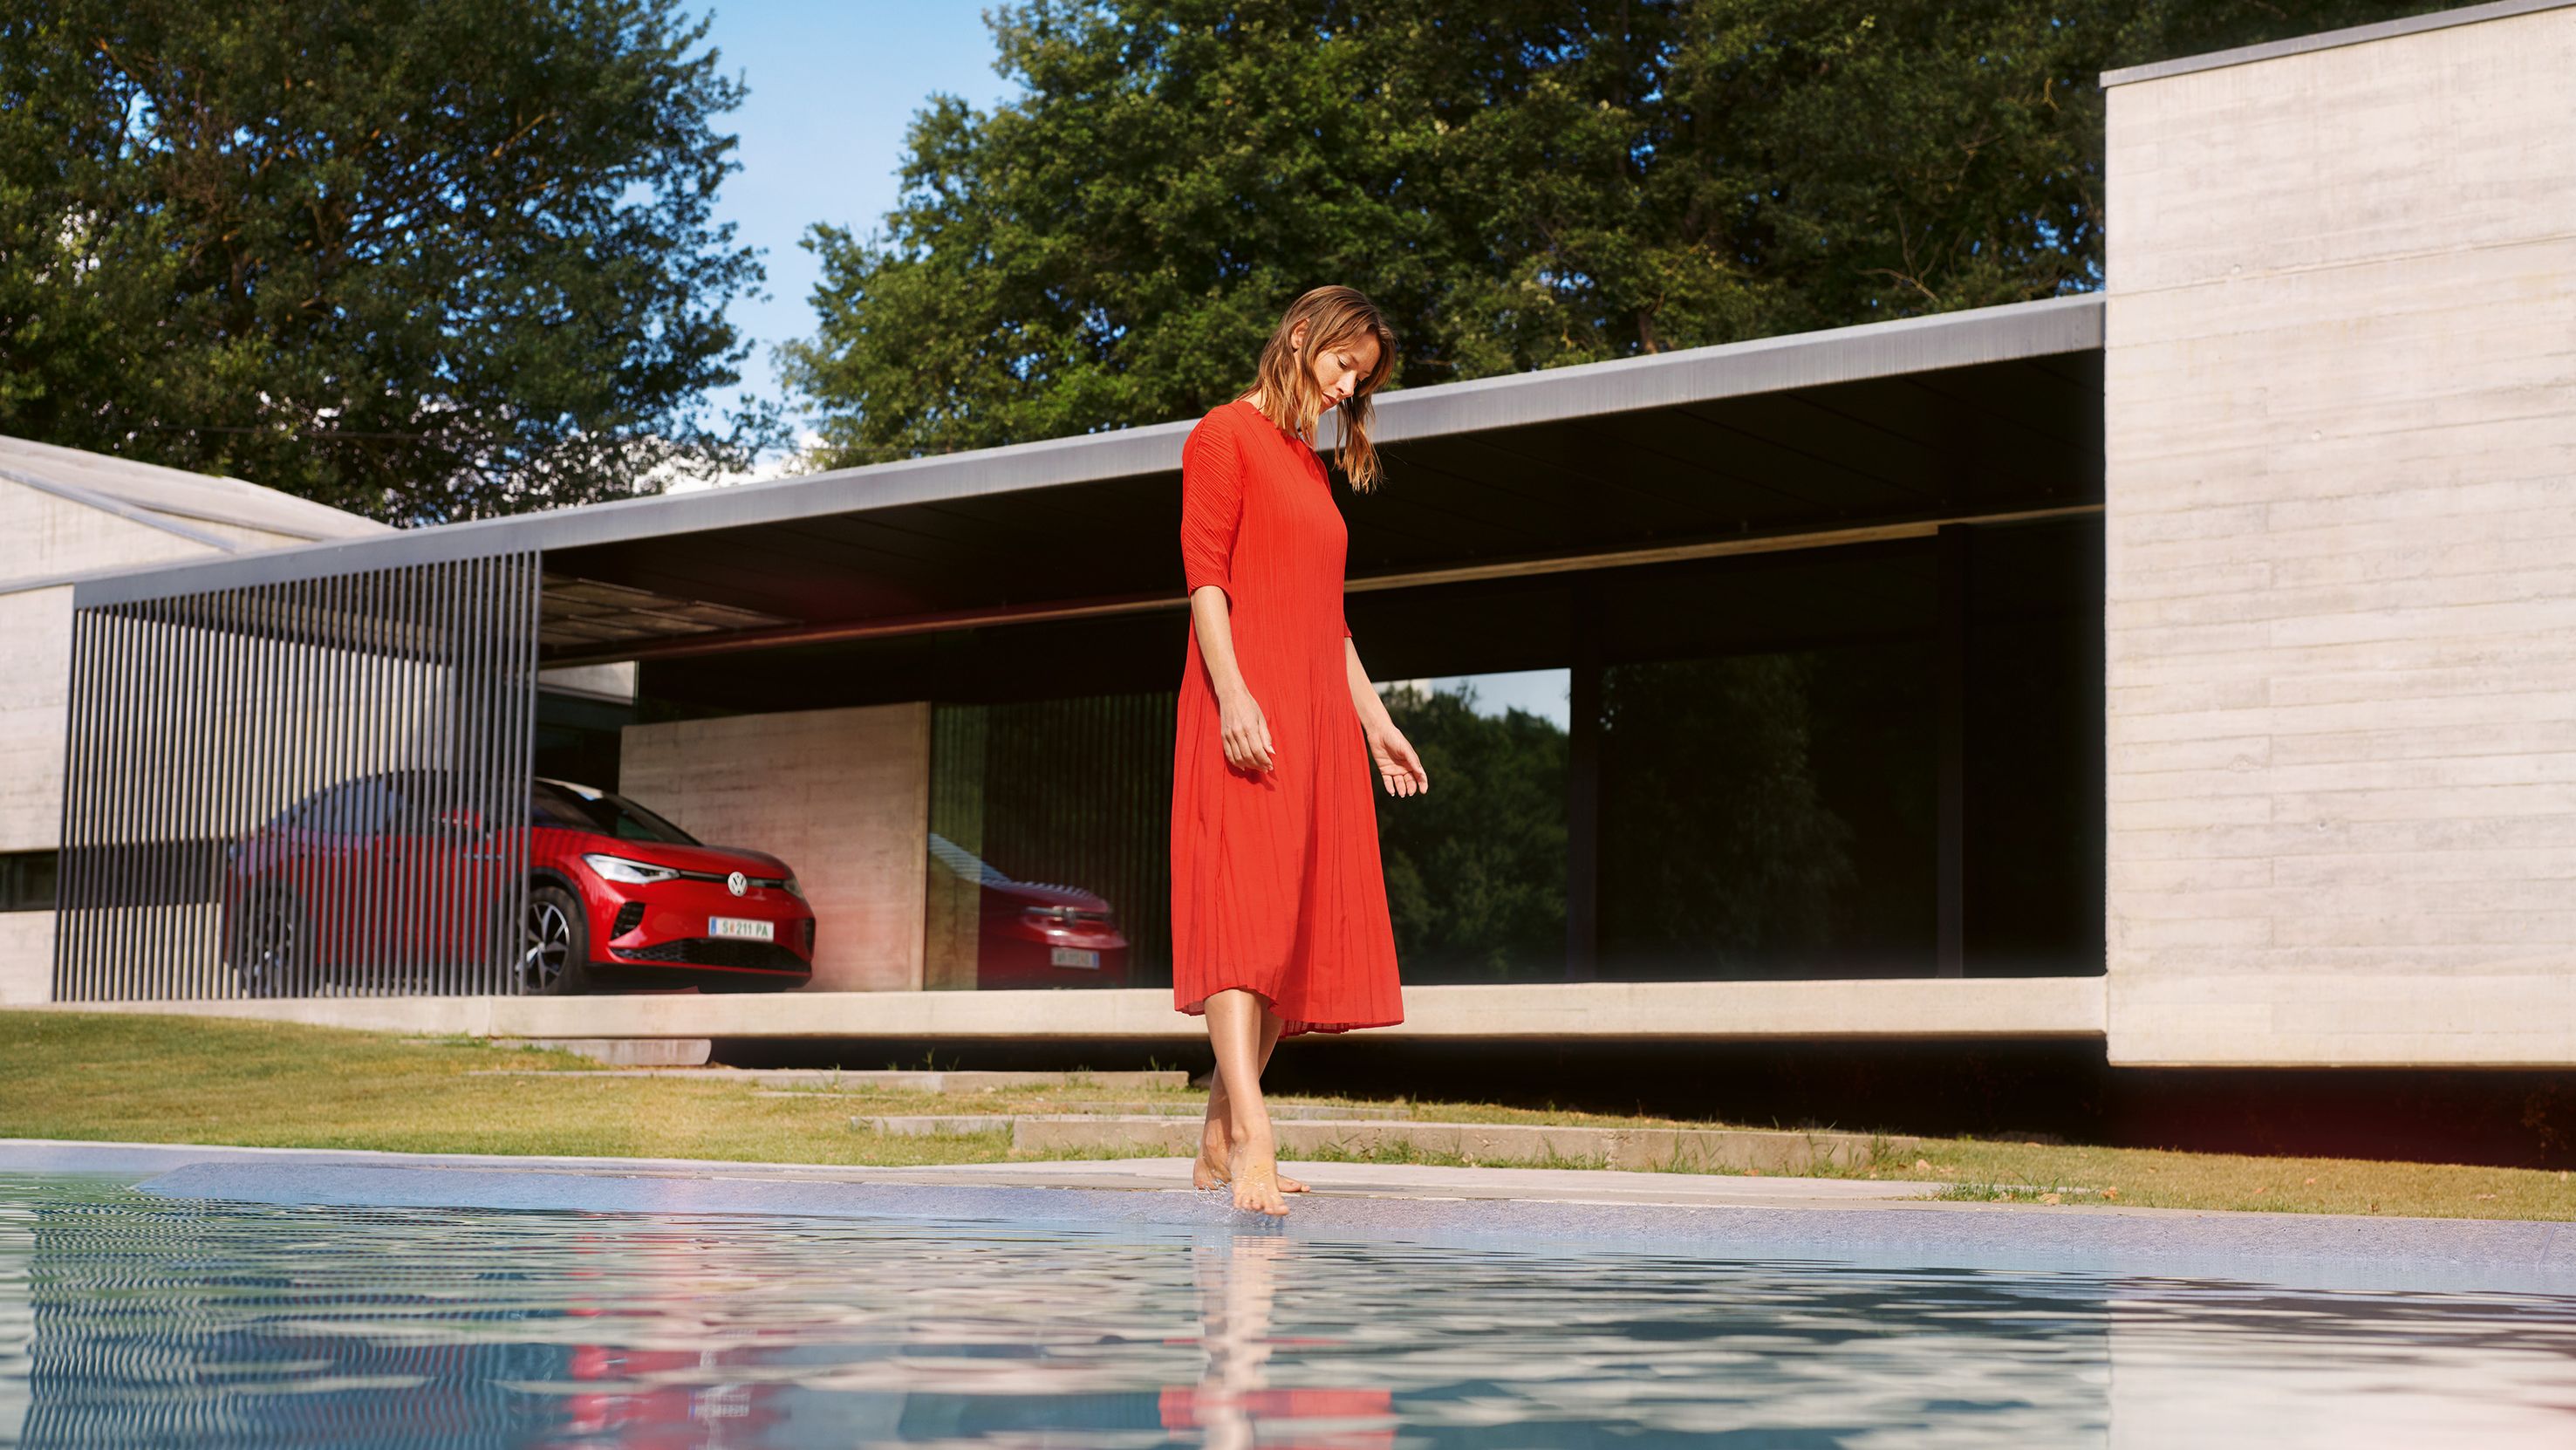 Roter VW ID.5 GTX geparkt vor einem Haus. Eine Frau im roten Kleid am Pool.